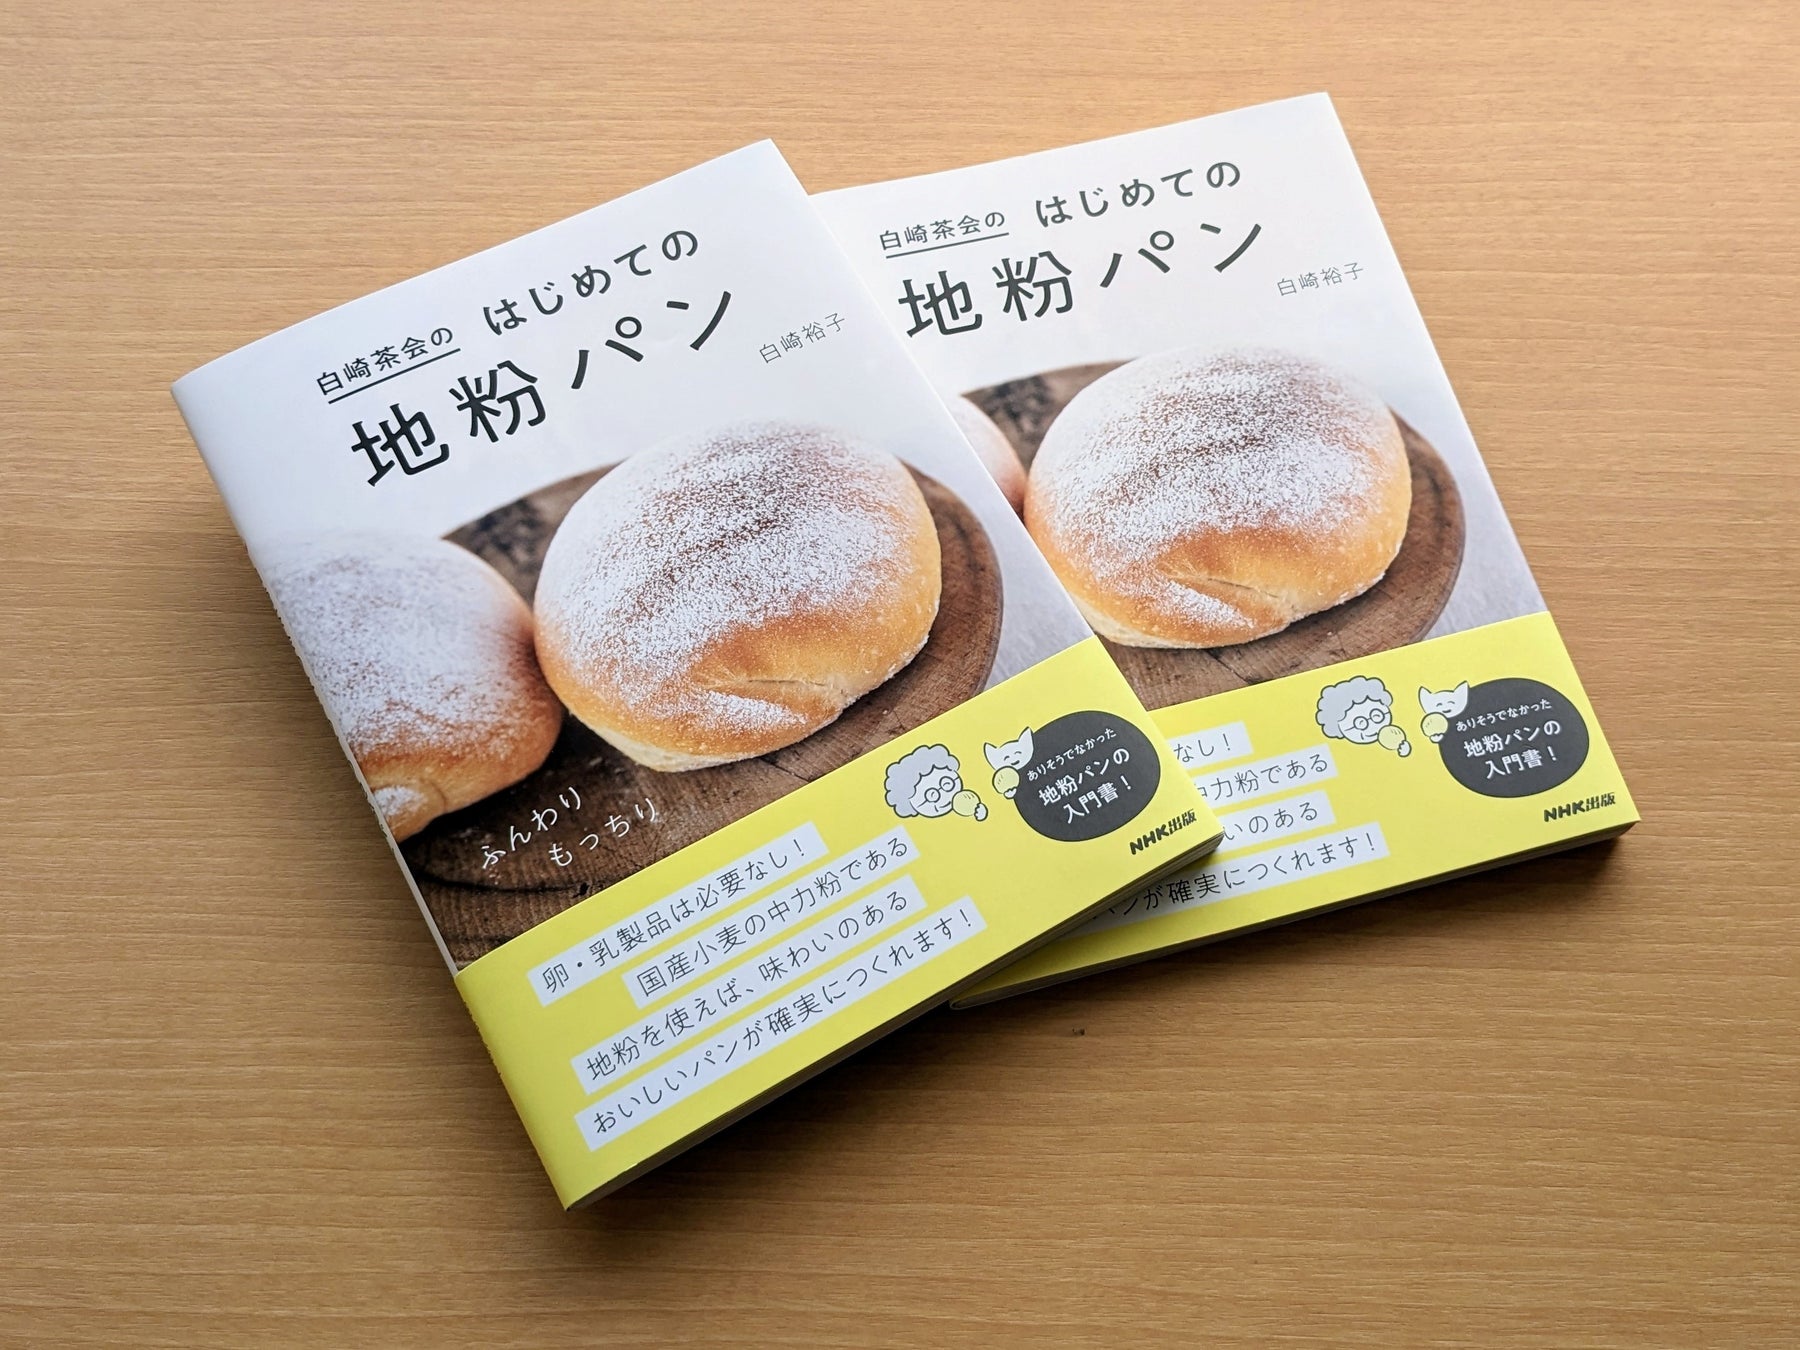 販売好調で発売後即増刷決定！　『白崎茶会のはじめての地粉パン』でふんわり、もっちりのパンをつくりませんか？